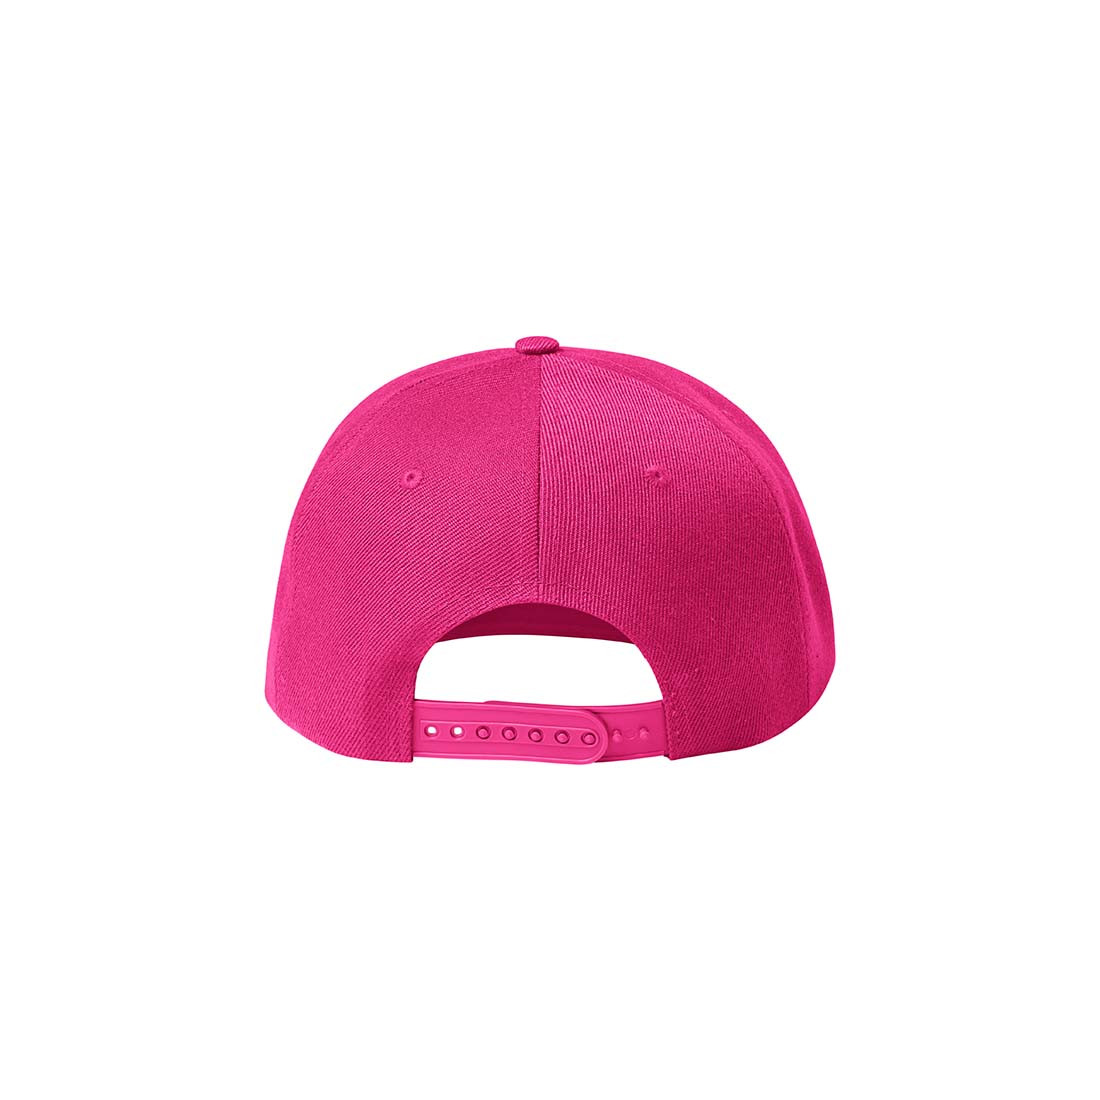 Şapcă unisex RAP 6P - Imbracaminte de protectie